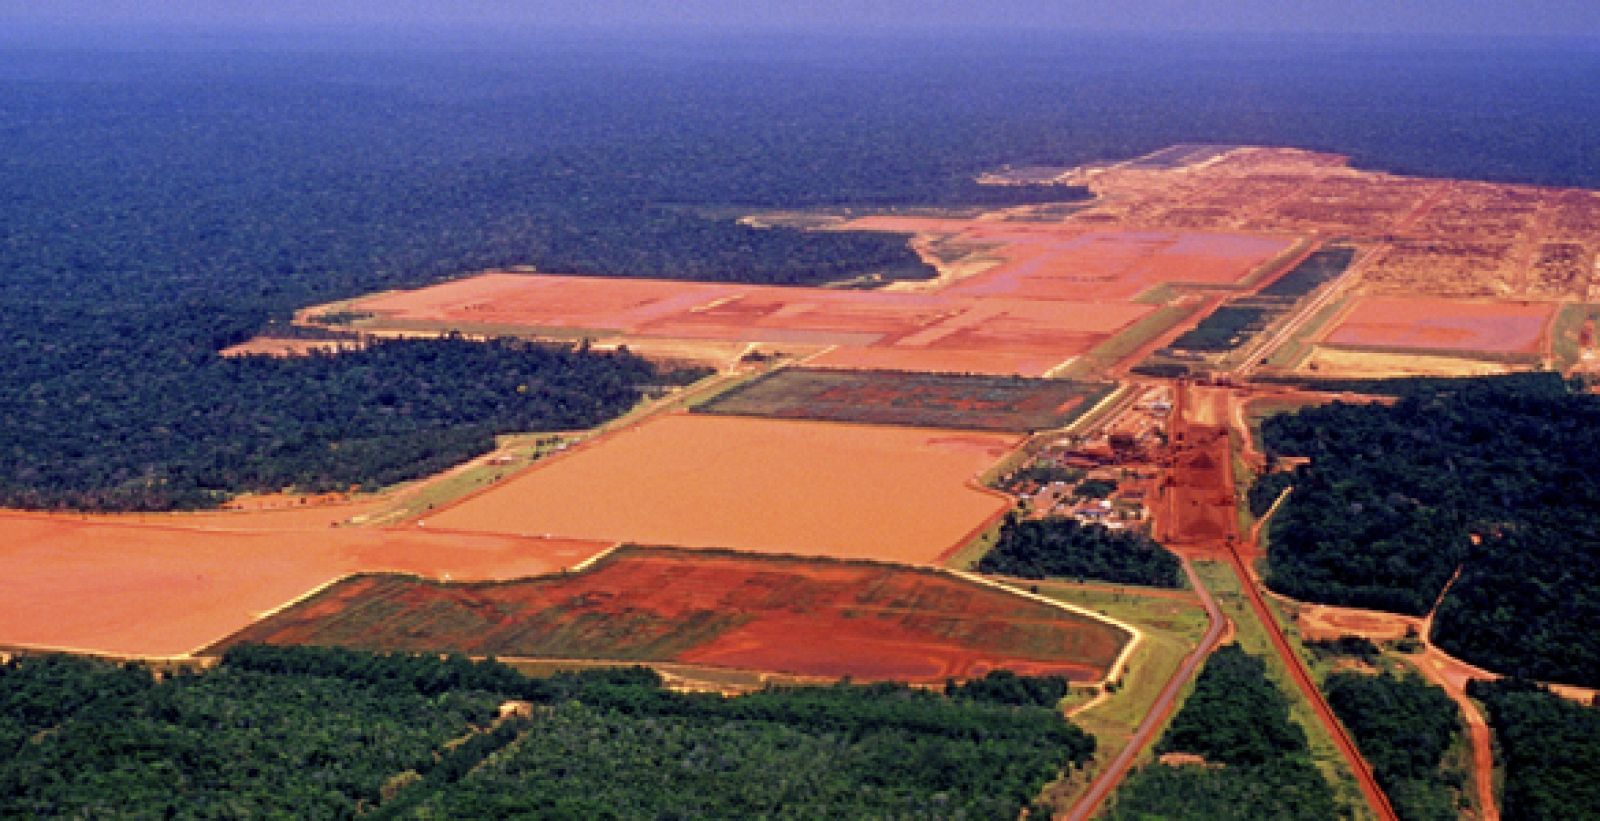 Imagen de la selva amazónica, que está fragmentada por la construcción de una fábrica maderera y de zonas de cultivo